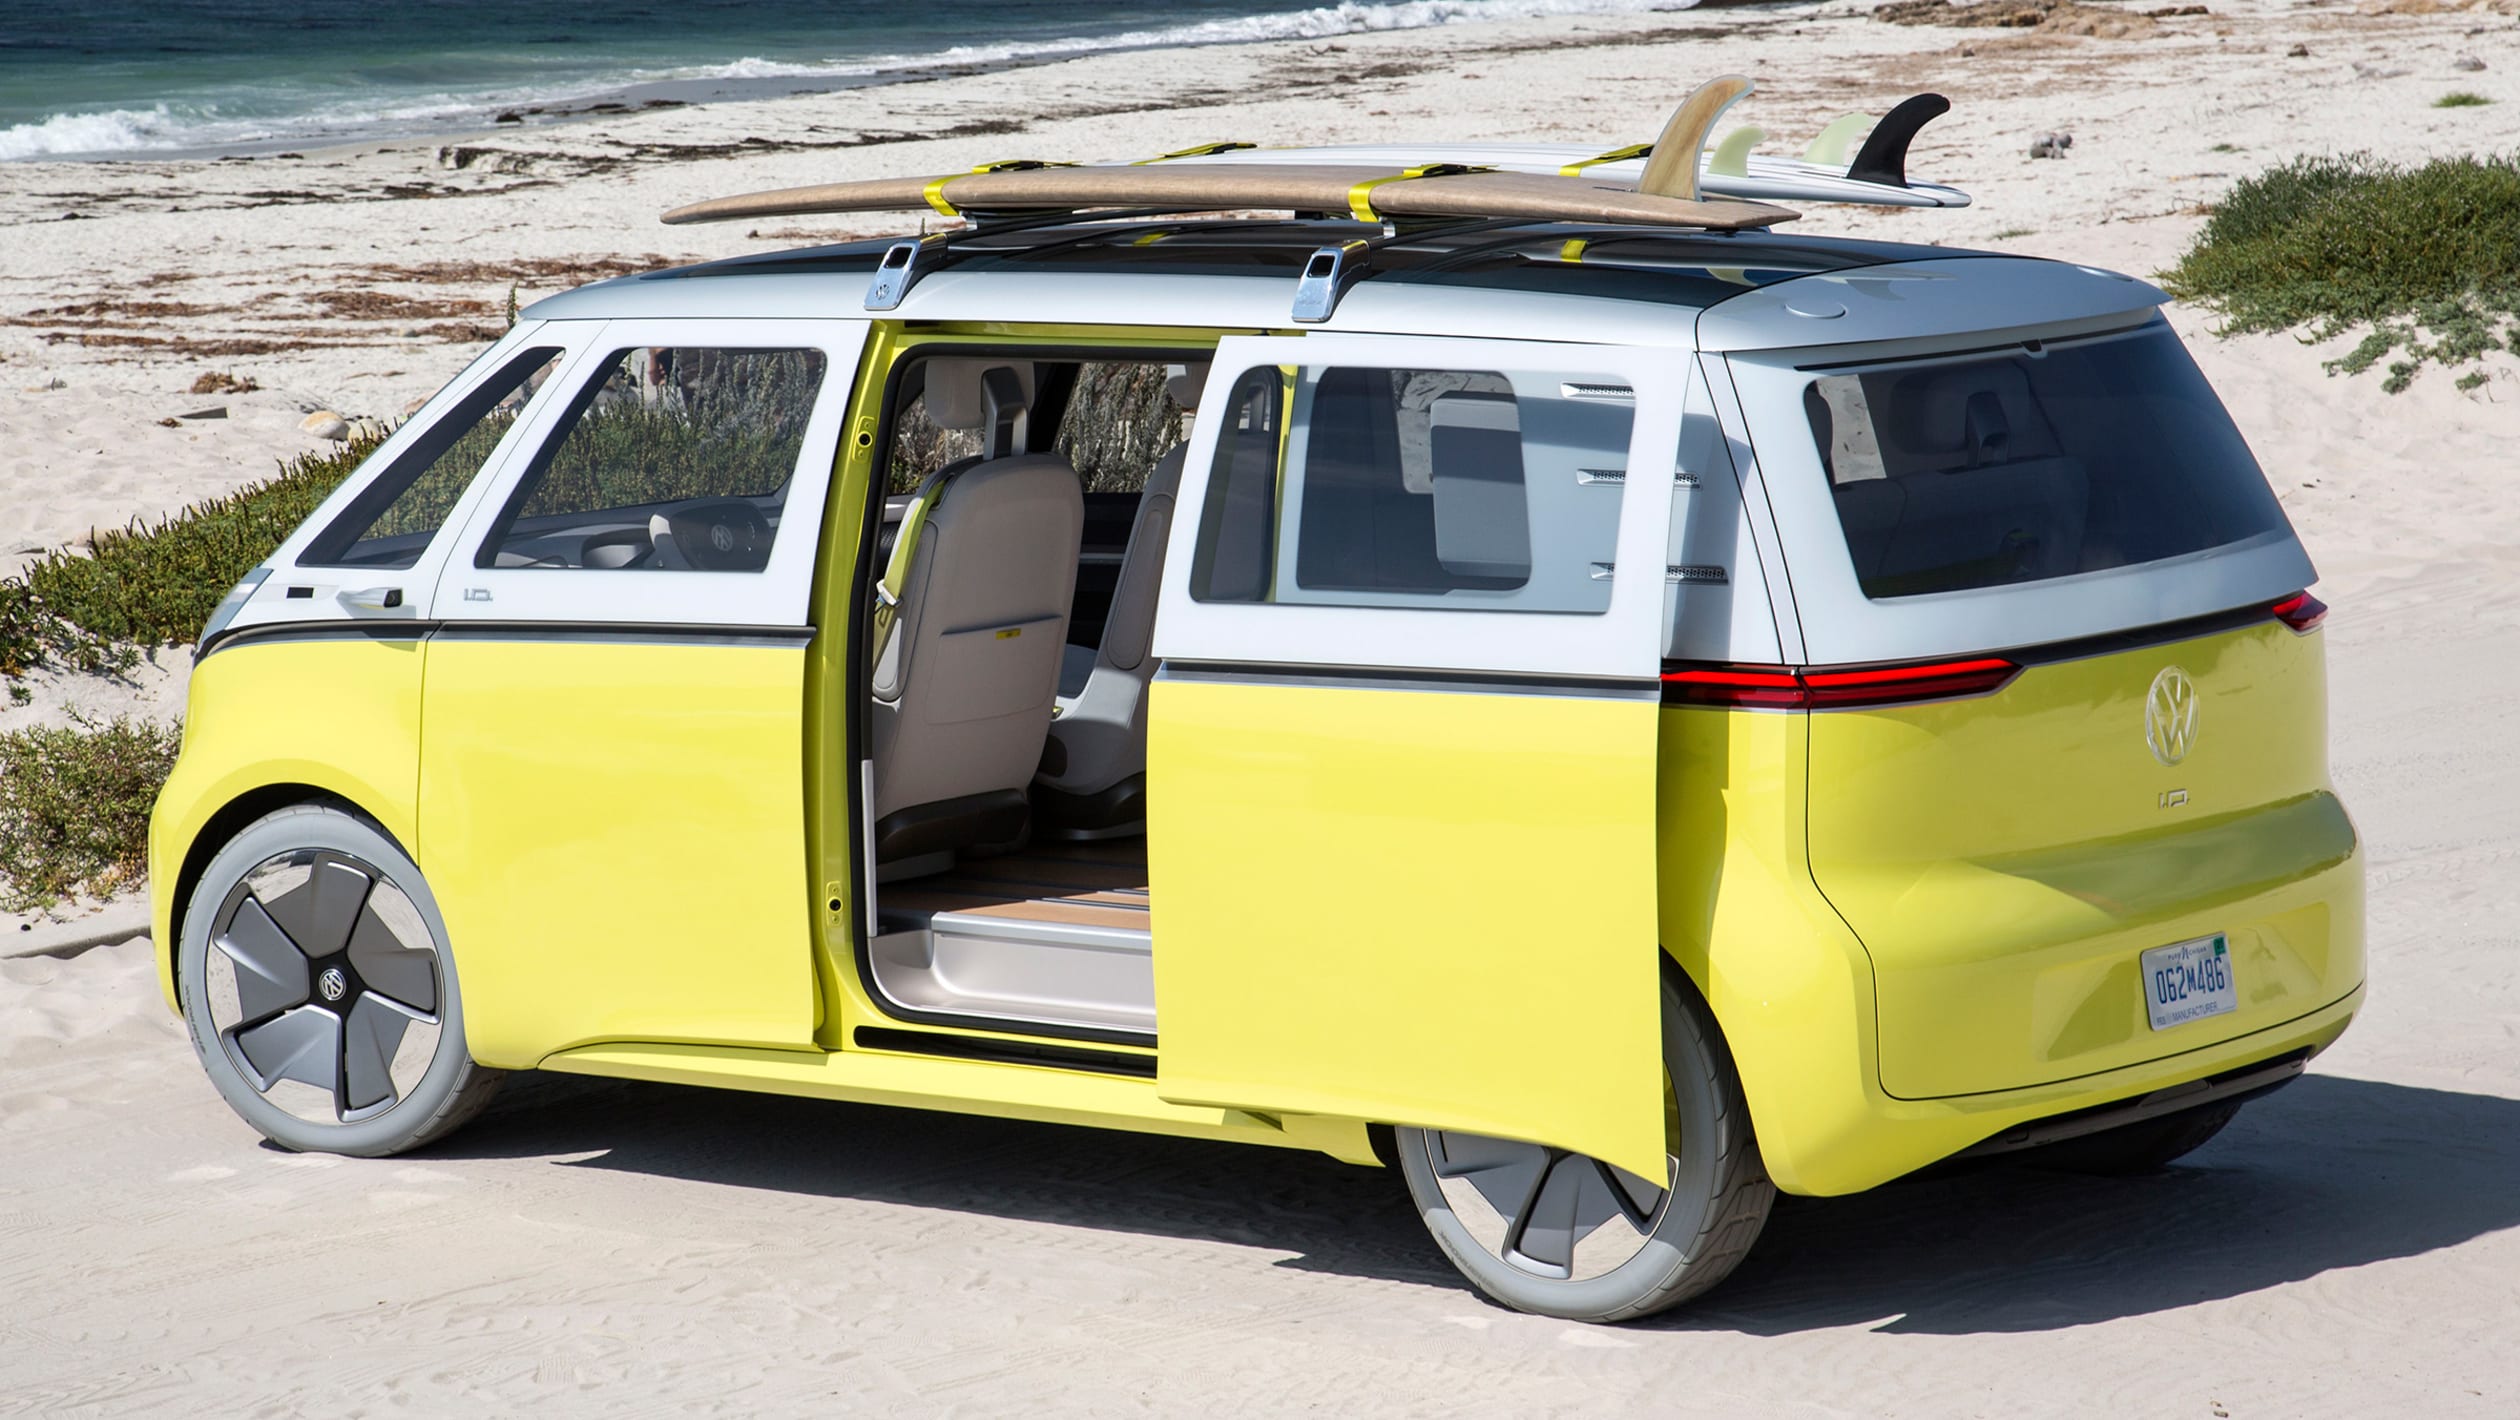 Volkswagen I.D. Buzz Microbus Concept 15 - Volkswagen ID. California Campervan Photos Gallery